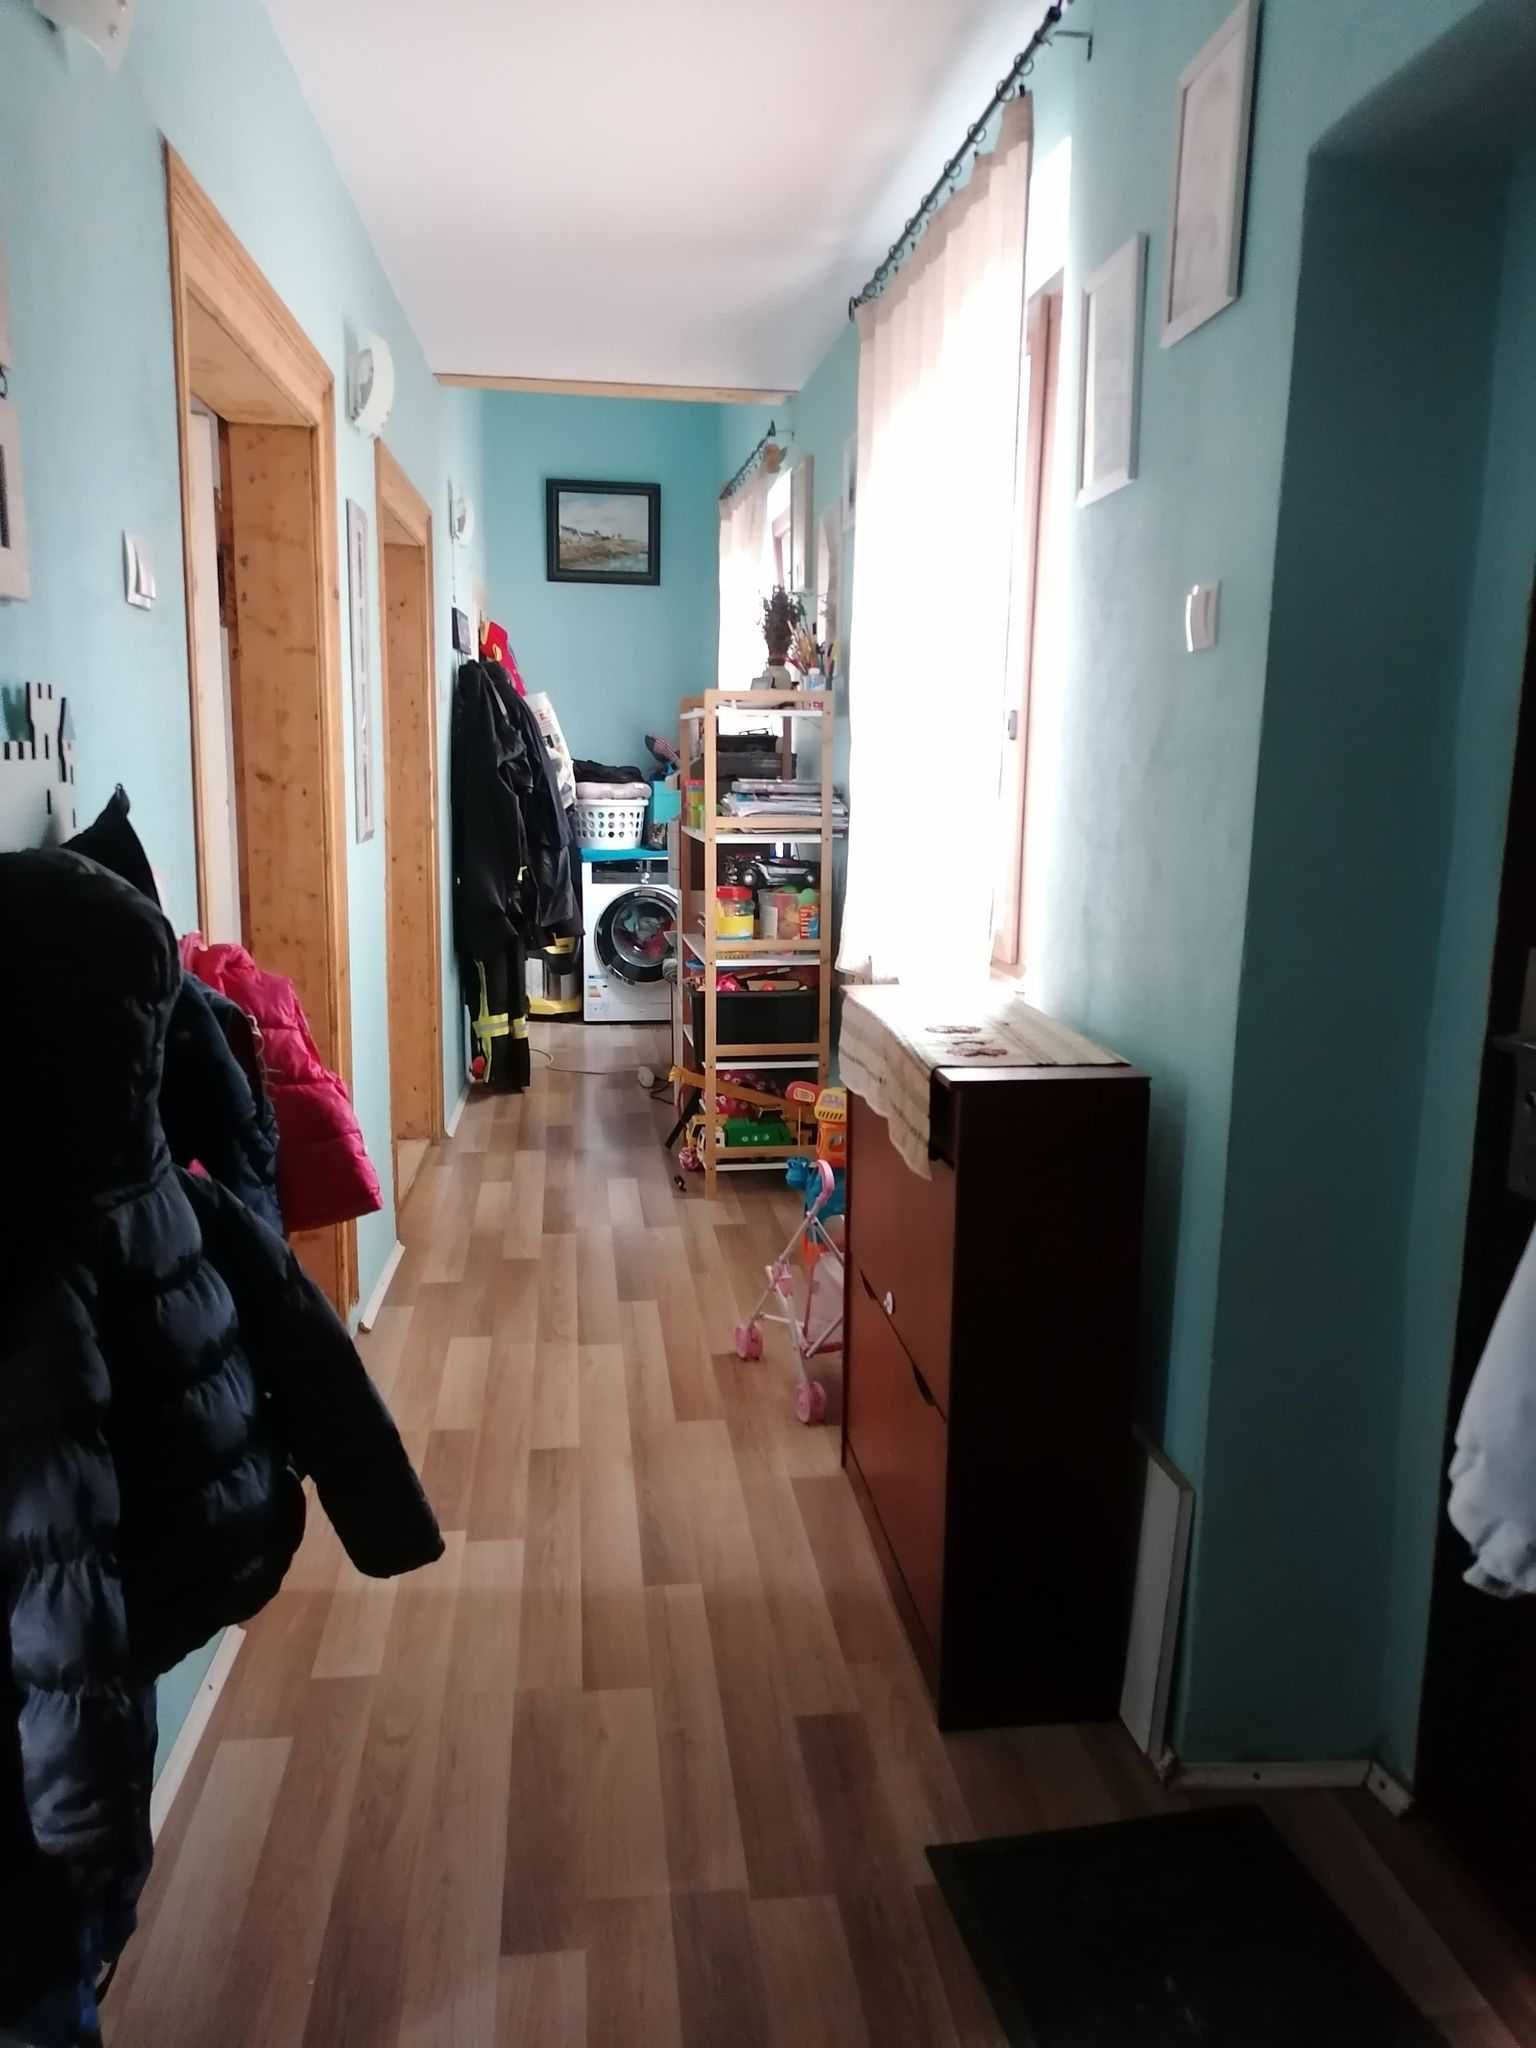 Apartament la casa Lugoj ultracentral, zona 0, 67 mp, 3 camere